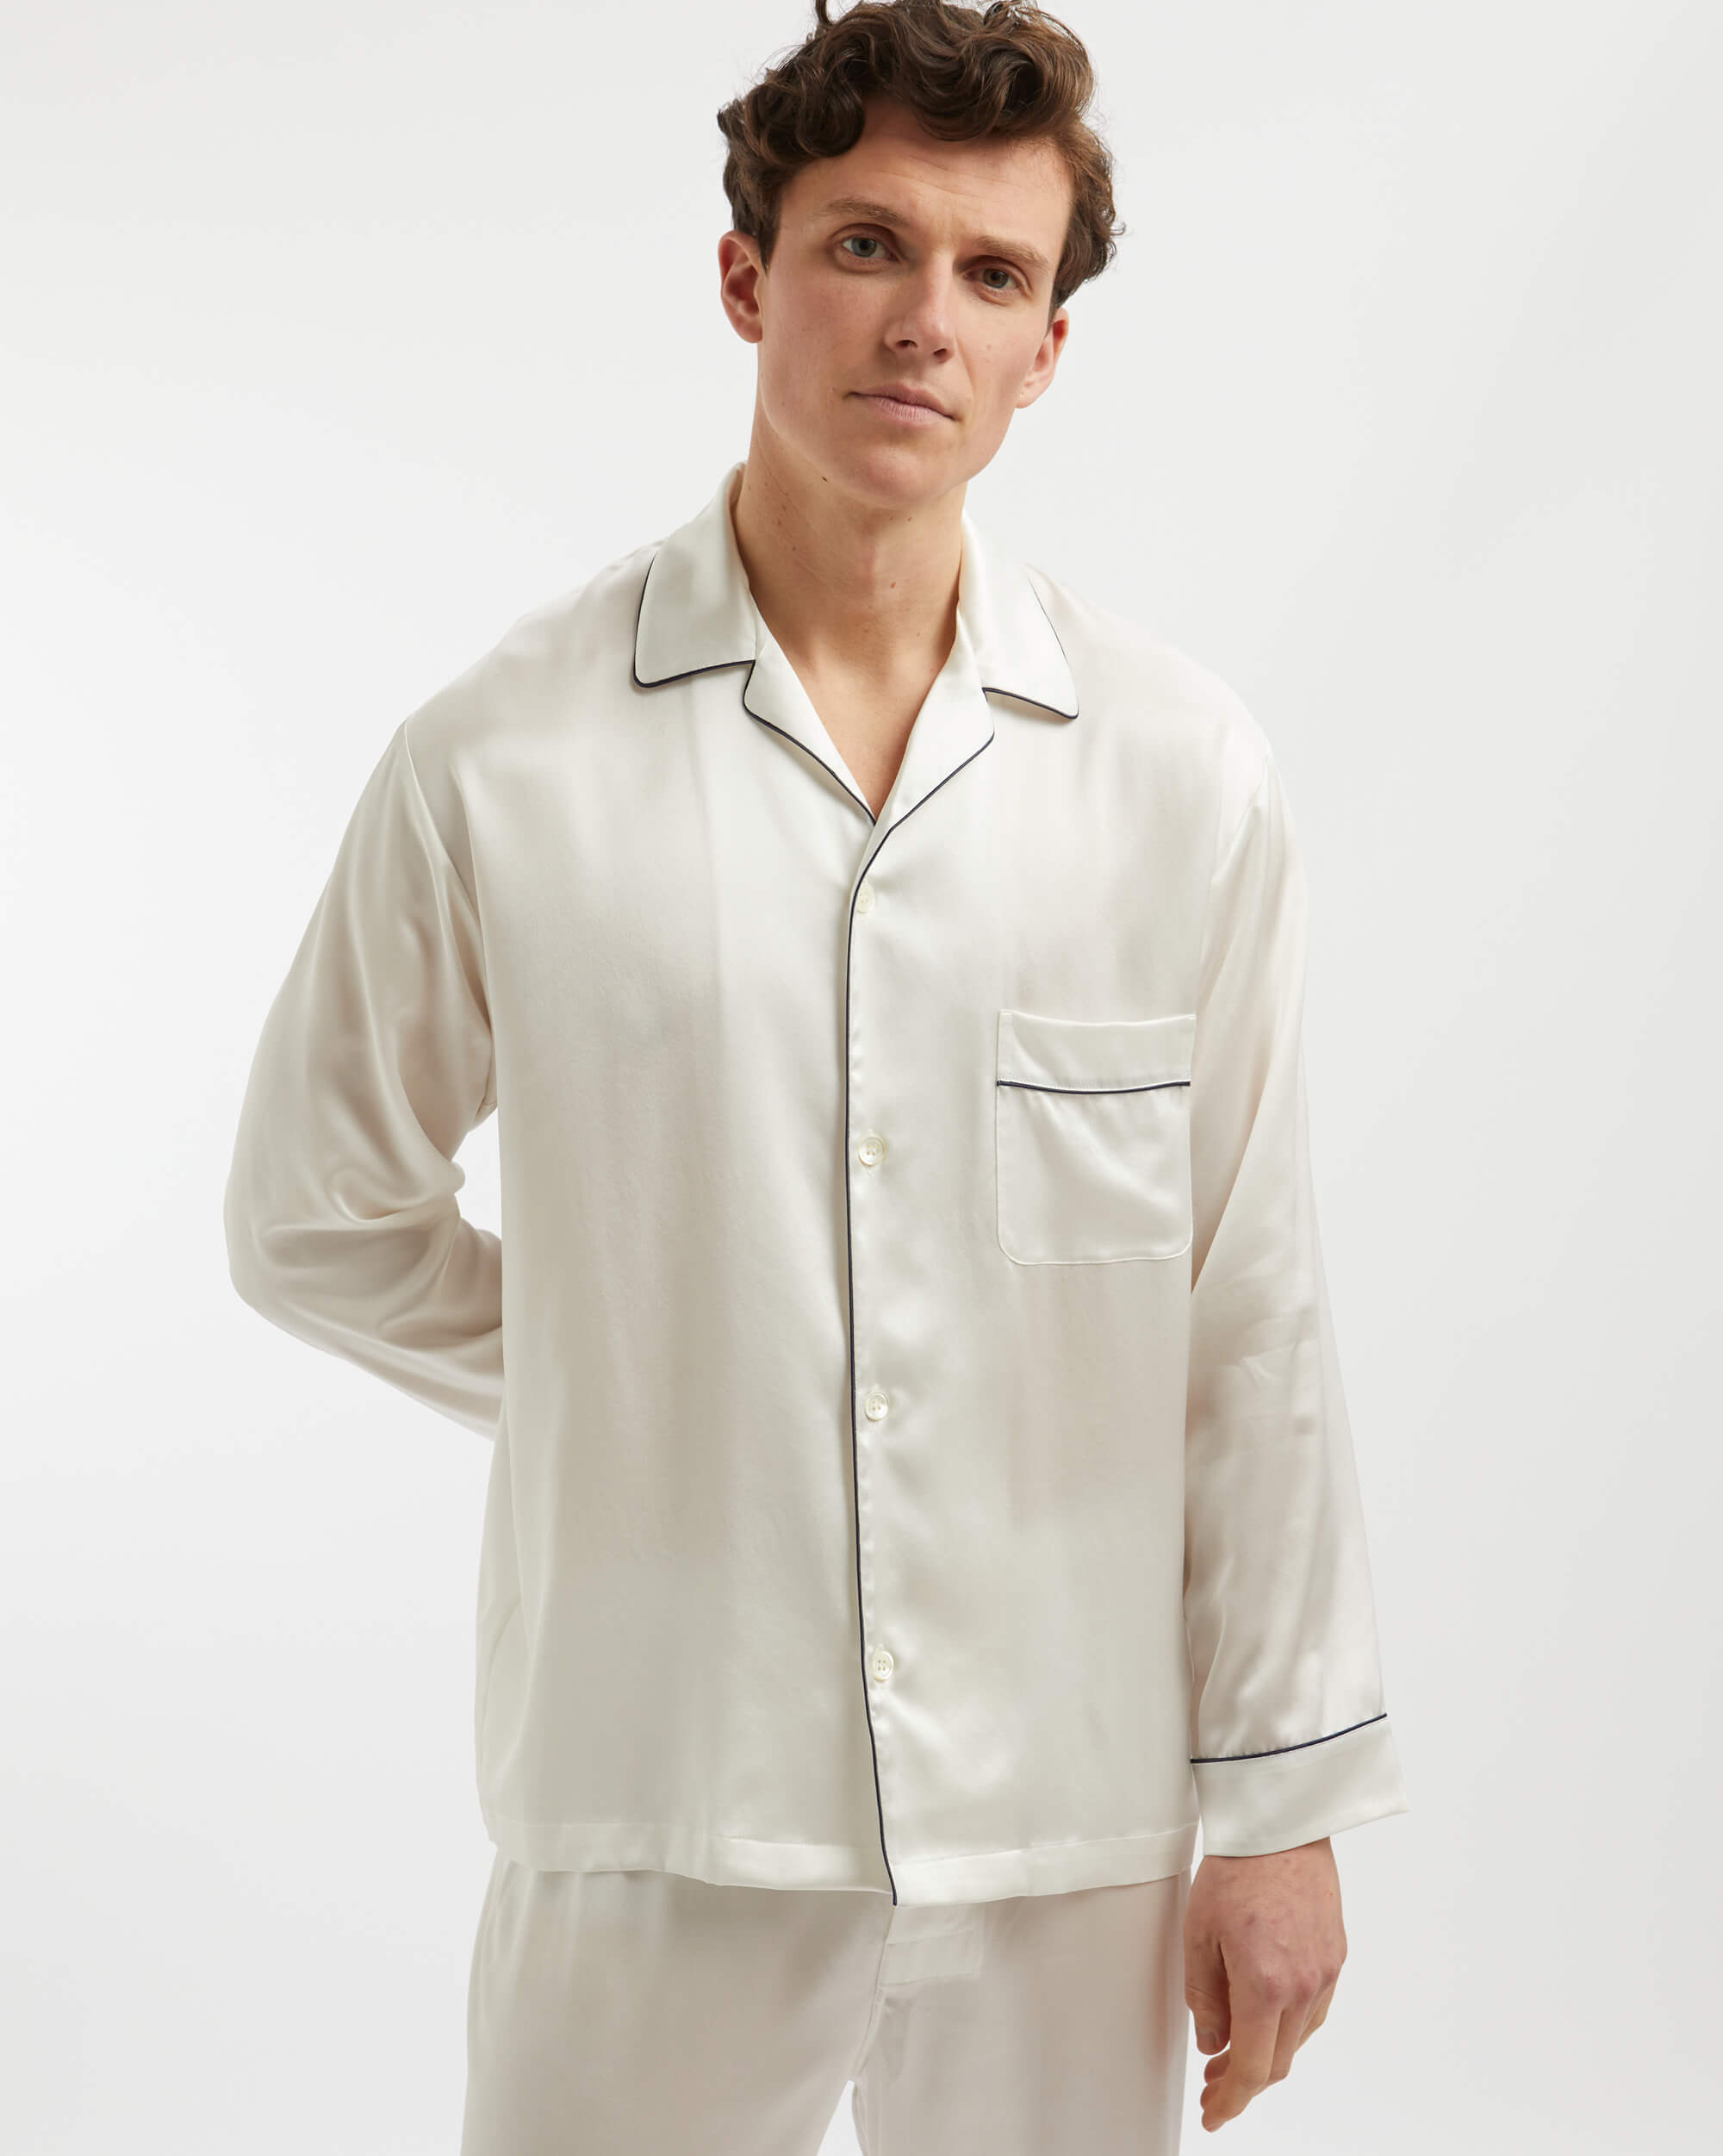 Men's Luxury Ivory Silk Pyjamas